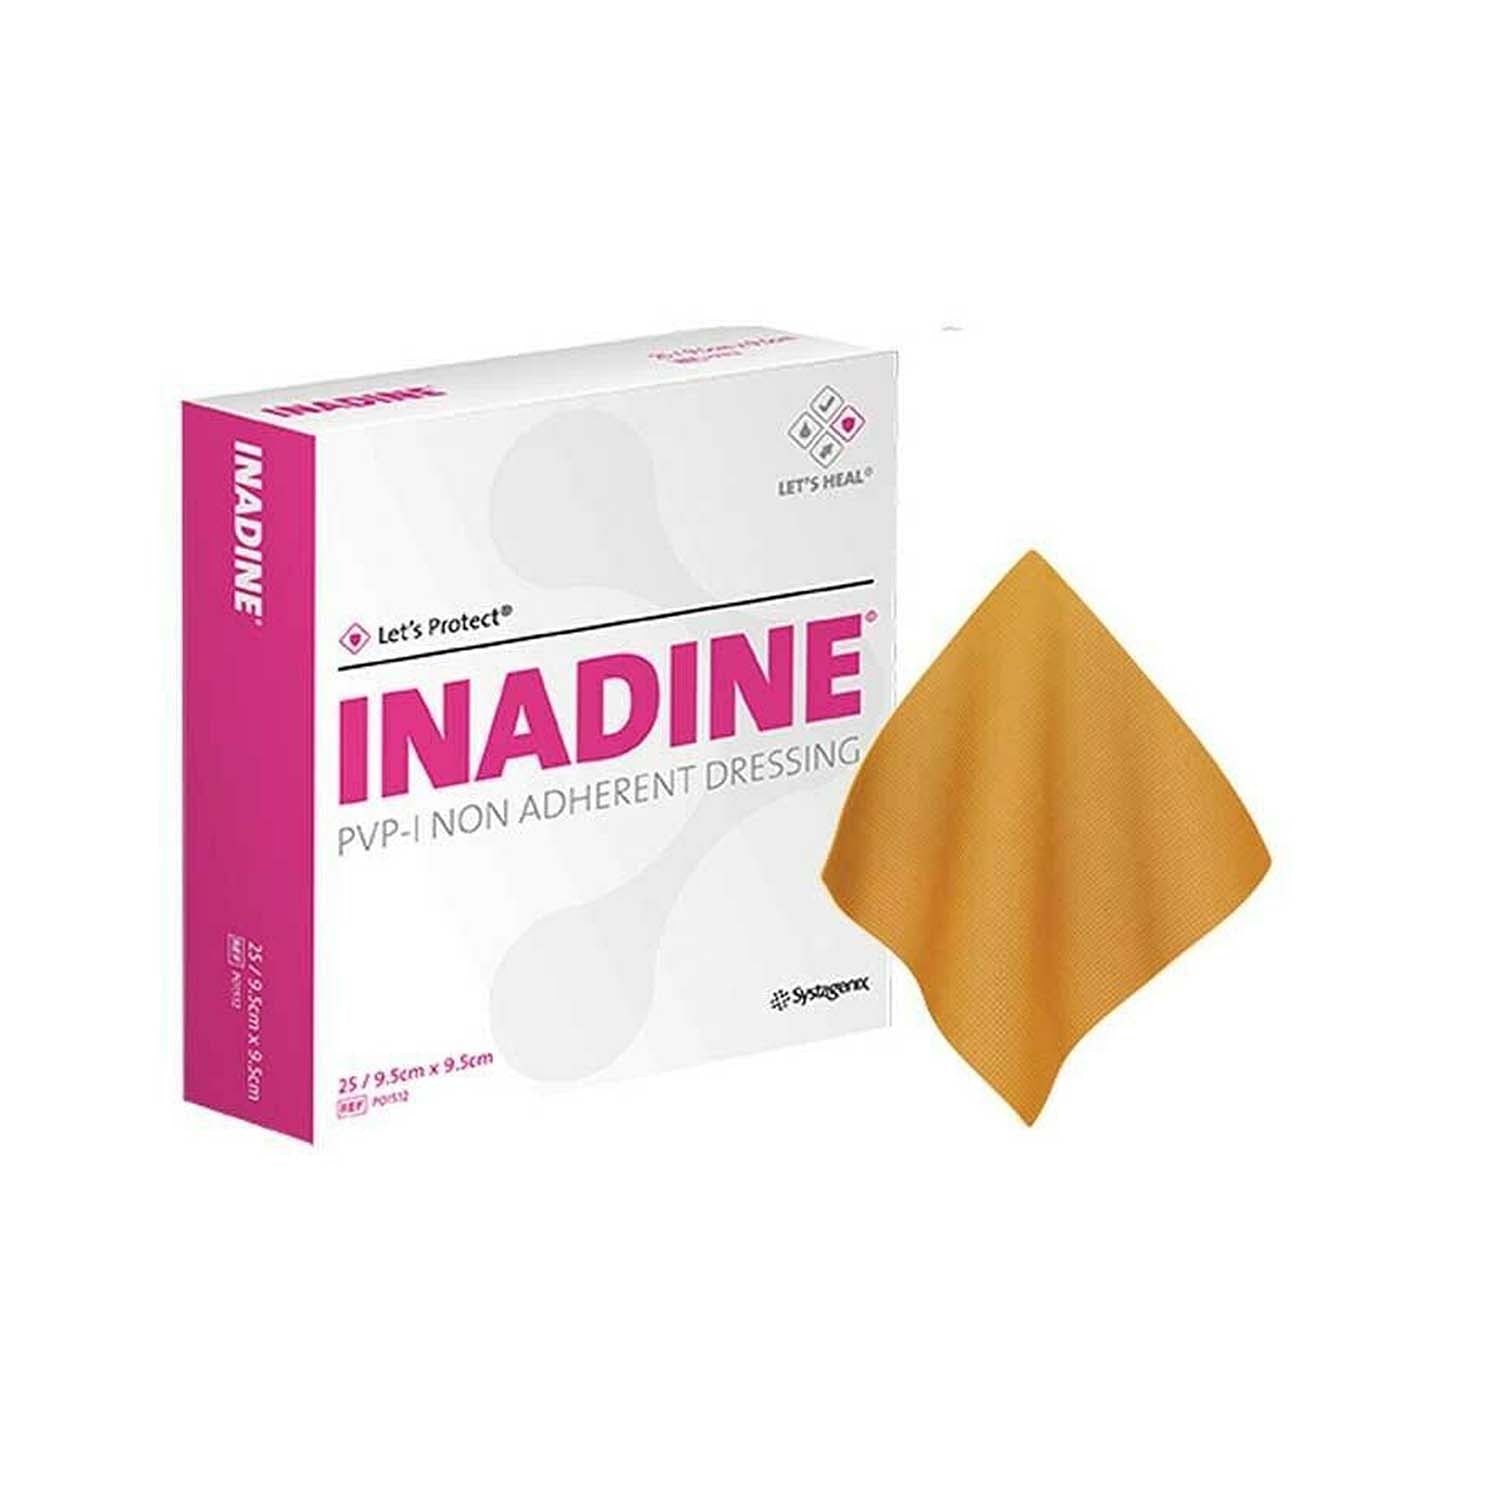 Inadine Povidone Iodine | 9.5 x 9.5cm | Pack of 10